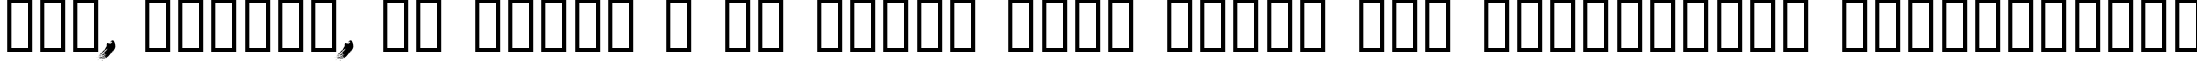 Пример написания шрифтом LeviBrush текста на украинском